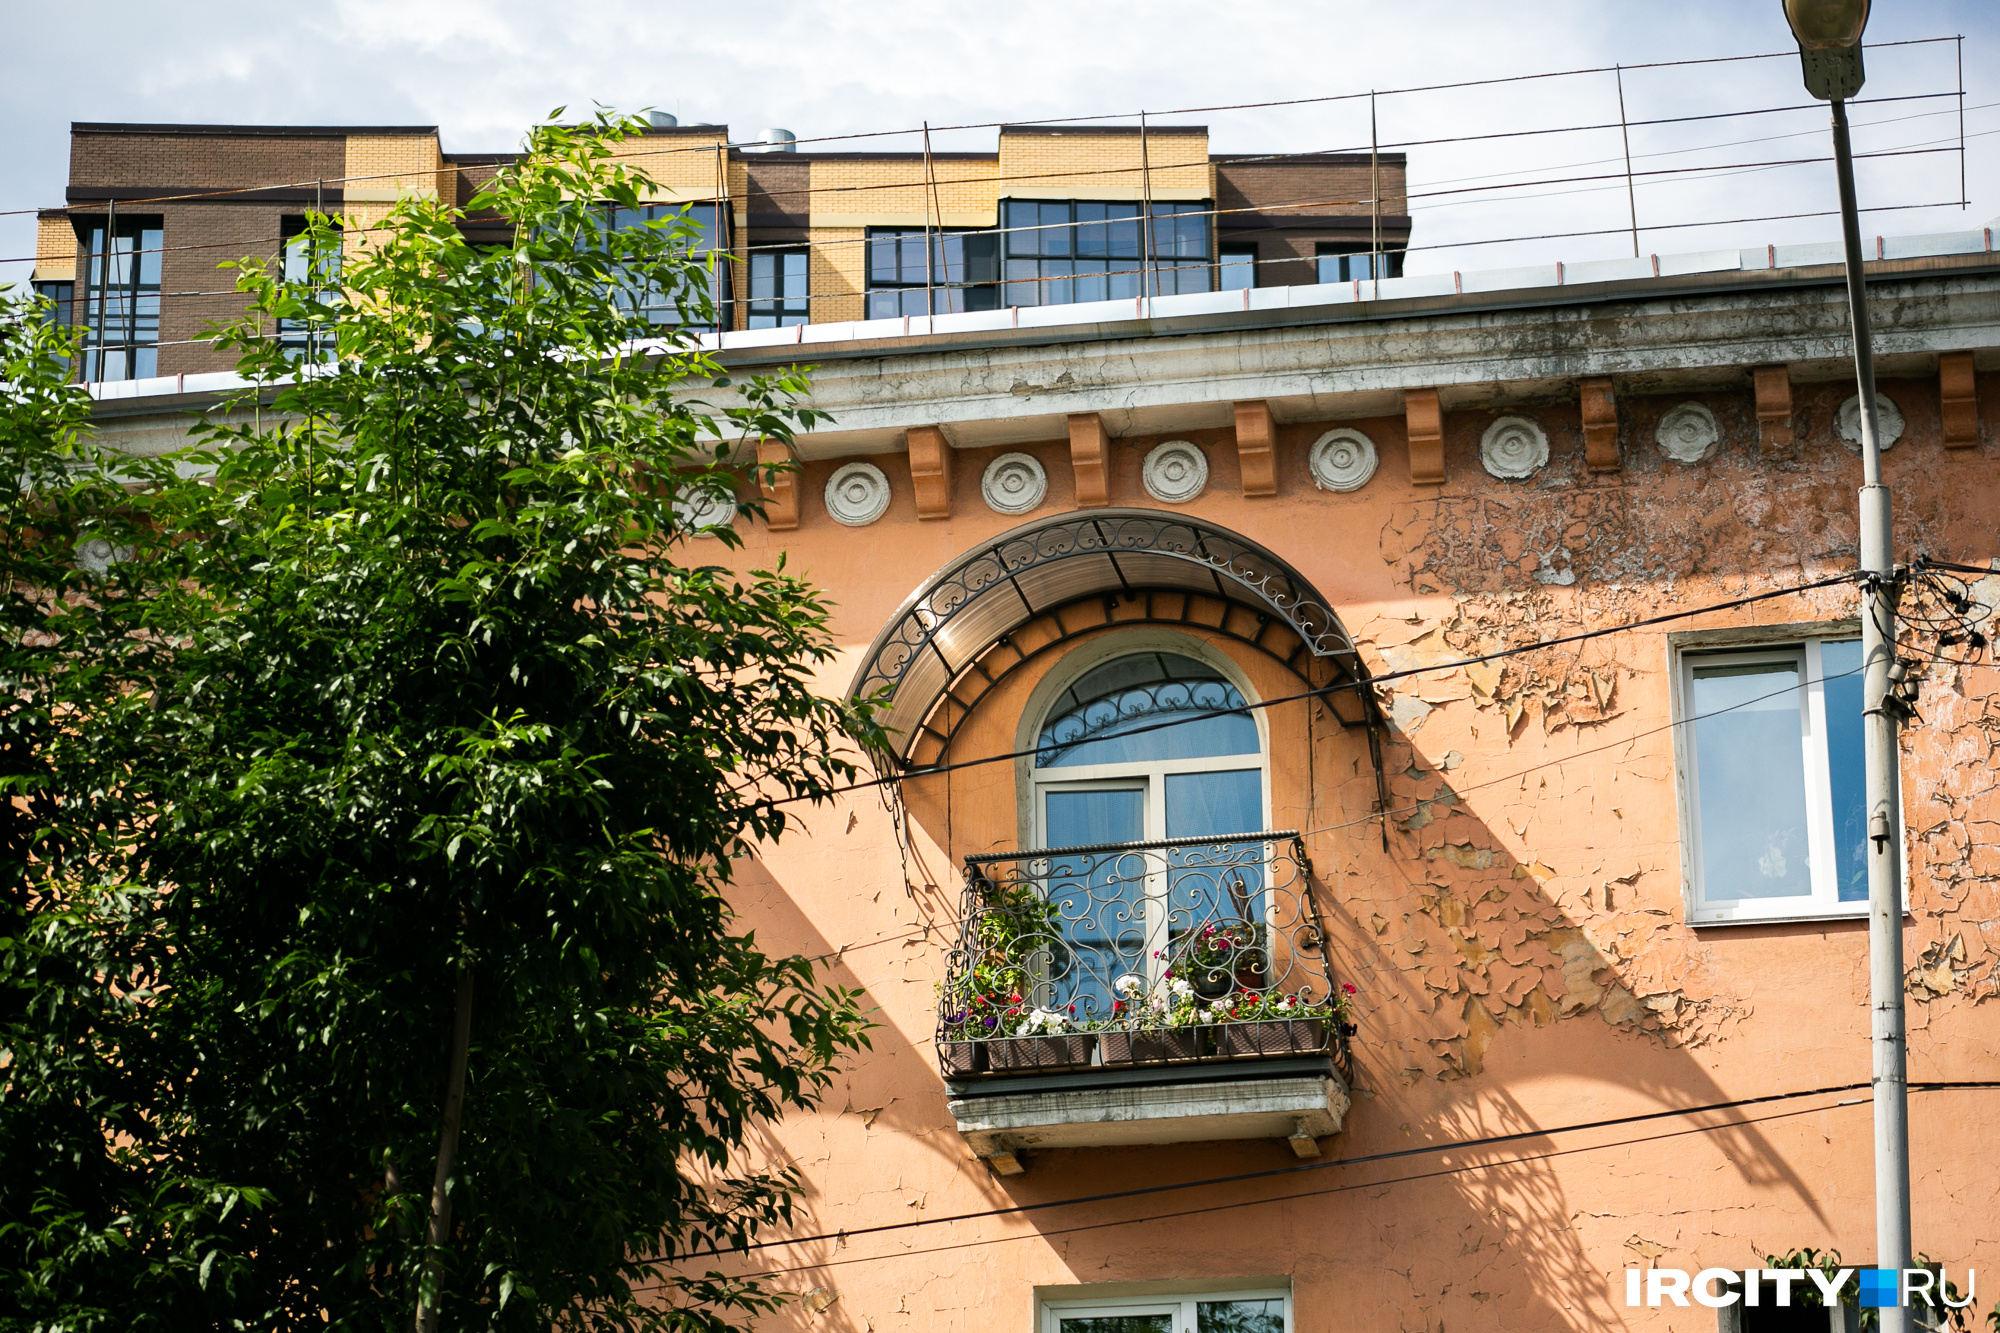 Местные жители аккуратно оформляют свои балкончики — любо-дорого глянуть!